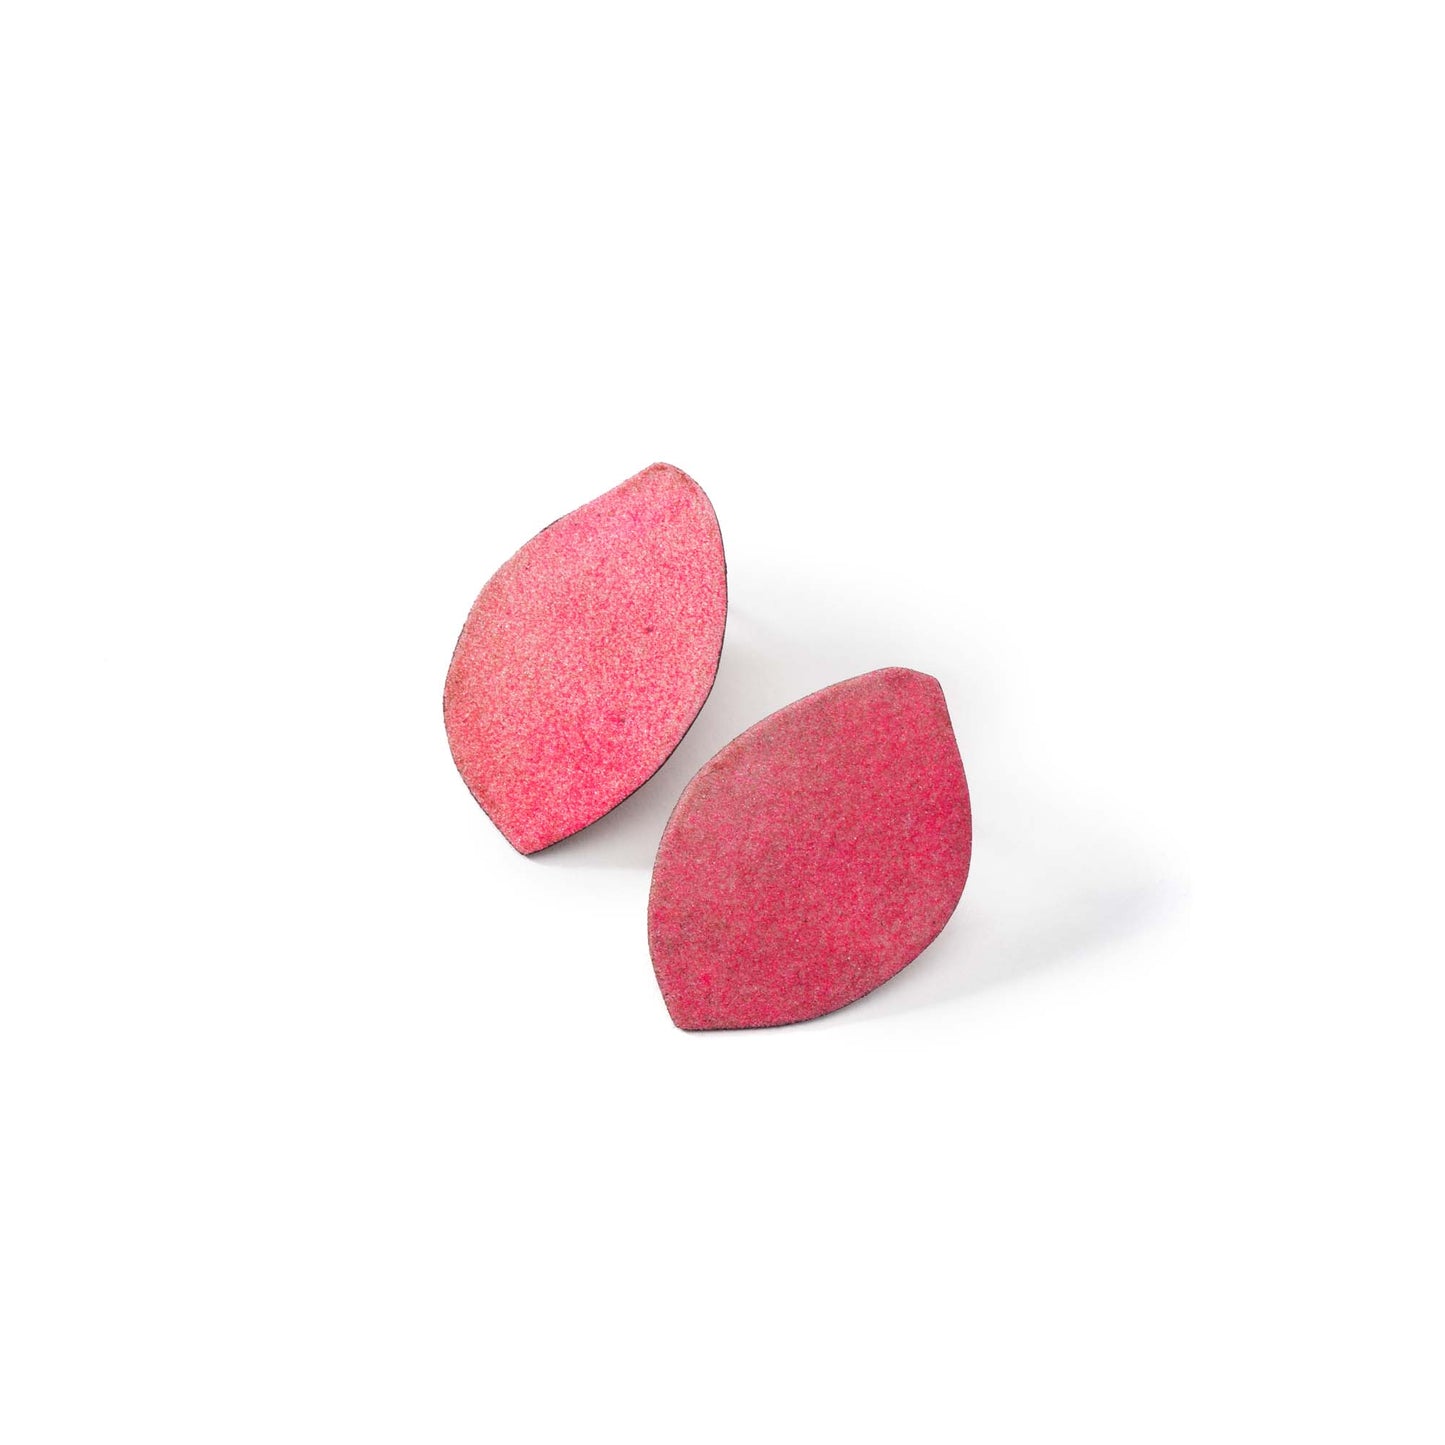 Enamel Palette Earring (Pink)